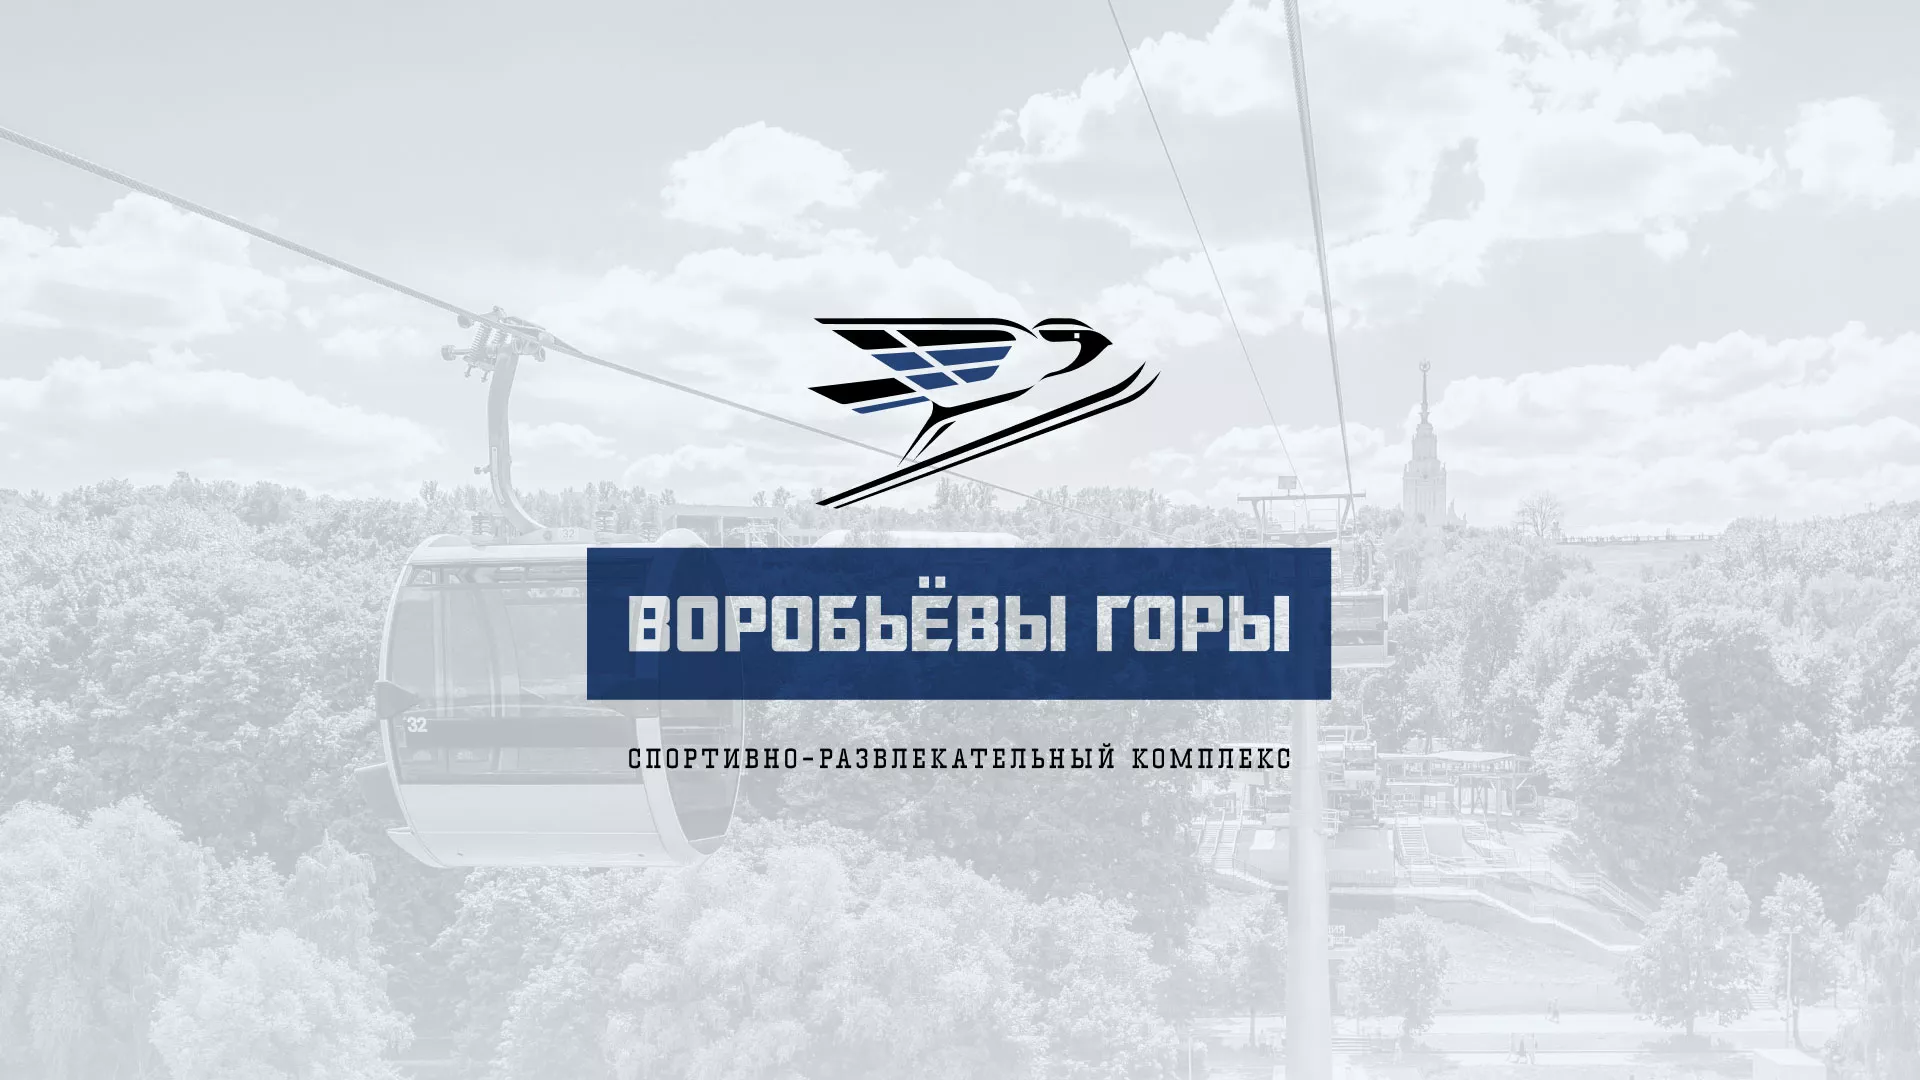 Разработка сайта в Липках для спортивно-развлекательного комплекса «Воробьёвы горы»